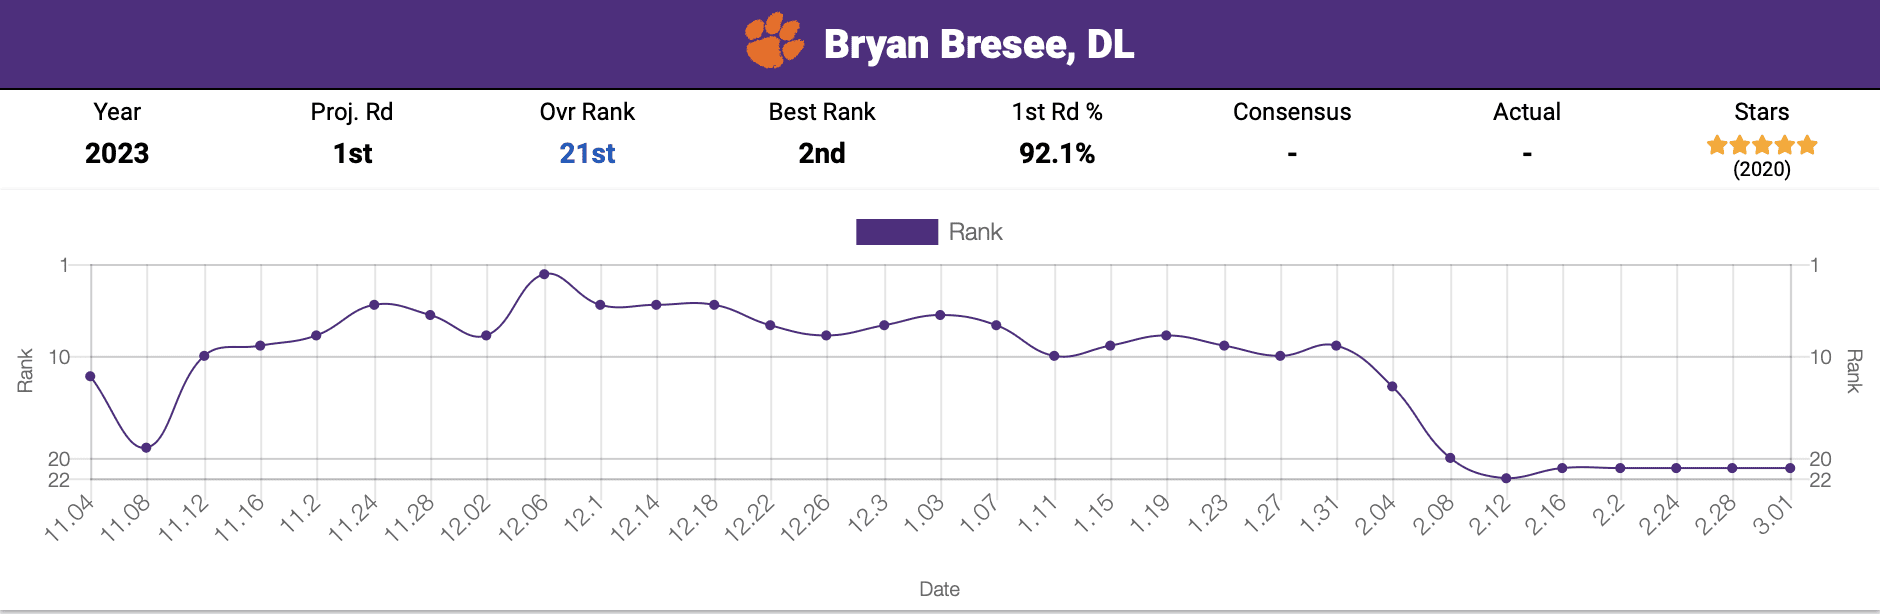 Steelers Draft Bryan Bresee